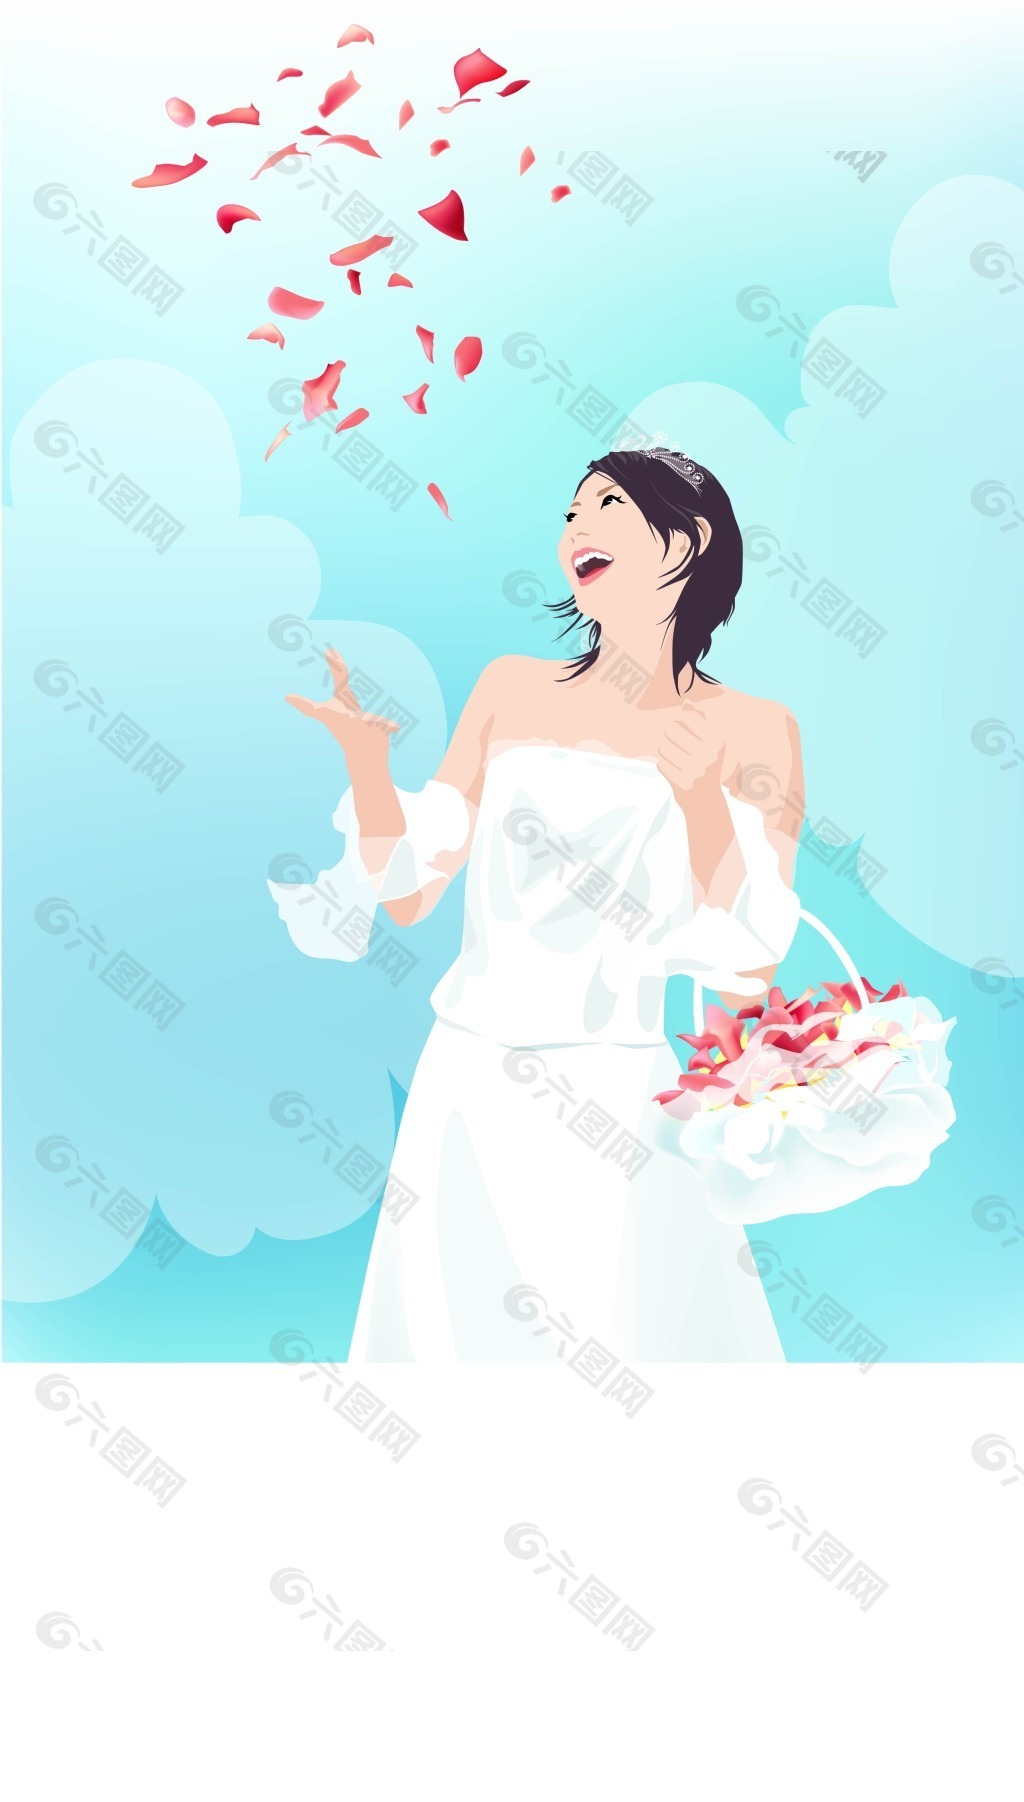 穿婚纱挎着花篮撒花的新娘